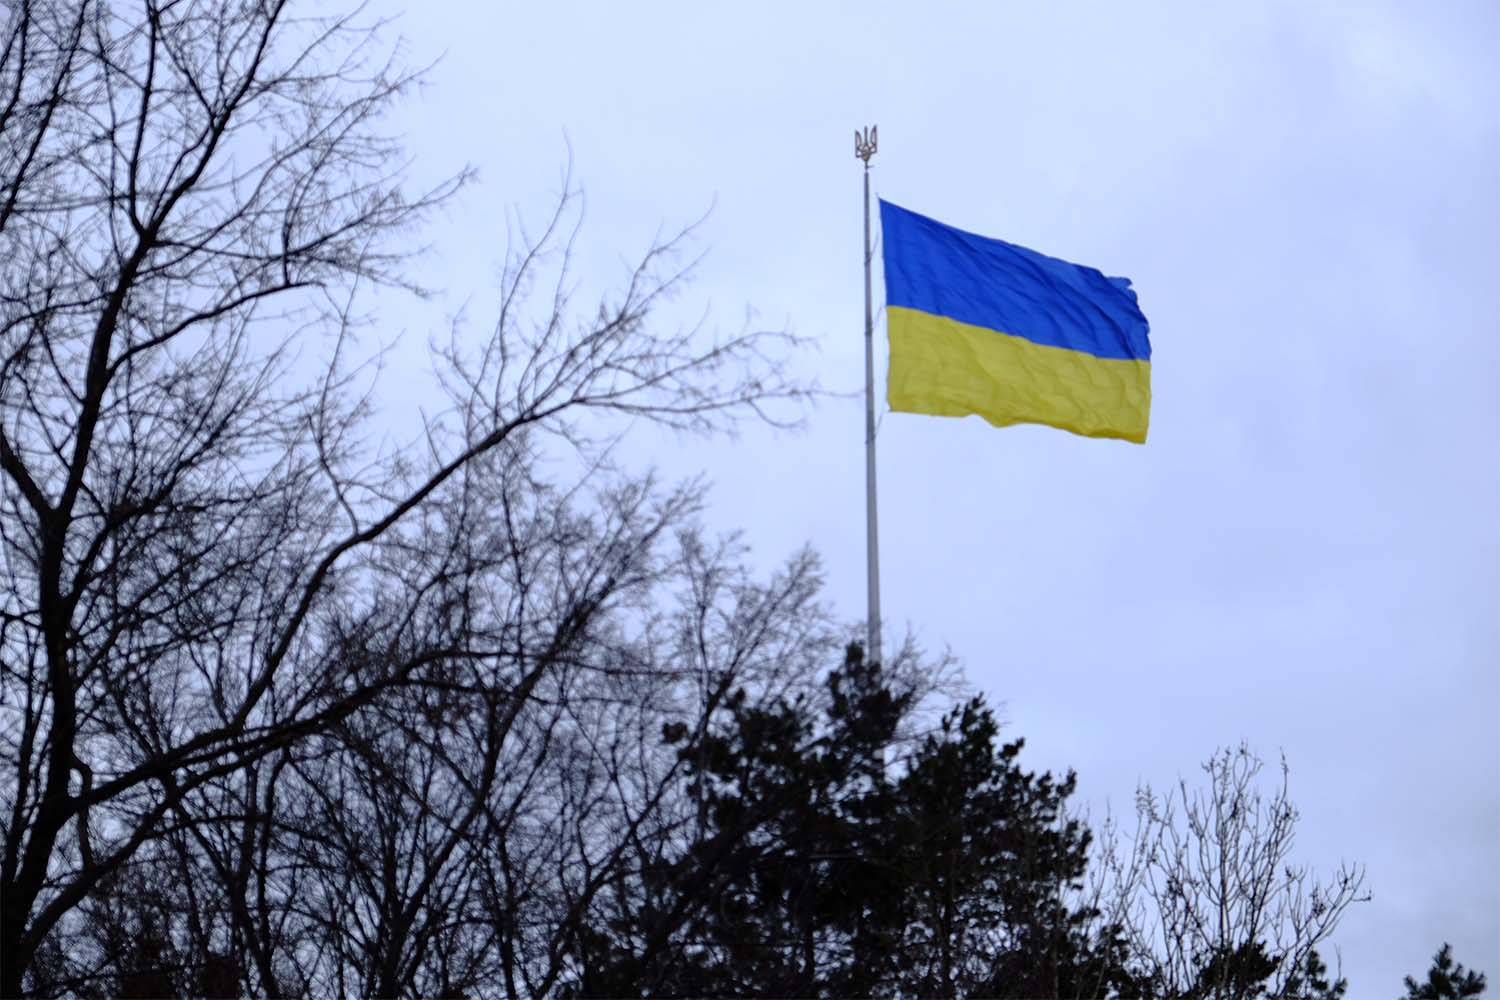 علم أوكرانيا الضخم الذي ثبته رئيس البلدية. &quot;كلمات النشيد الوطني &quot;هتكفا&quot; &quot;أن نكون شعباً حراً في بلدنا&quot; تنطبق هنا بالمثل&quot; (تصوير: دافيد تبرسكي)